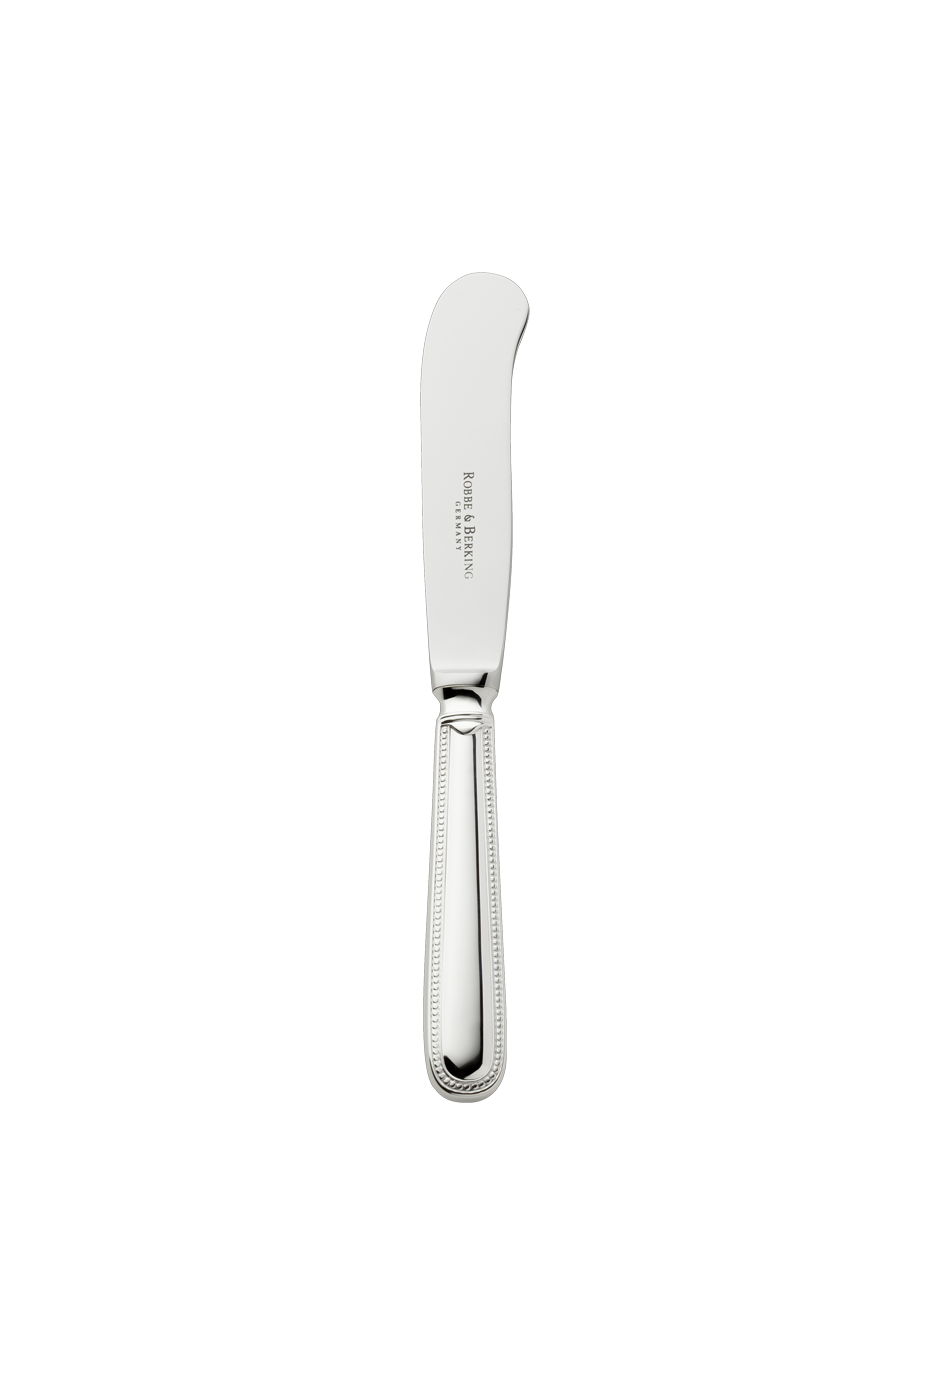 Französisch-Perl Butter Knife (150g massive silverplated)